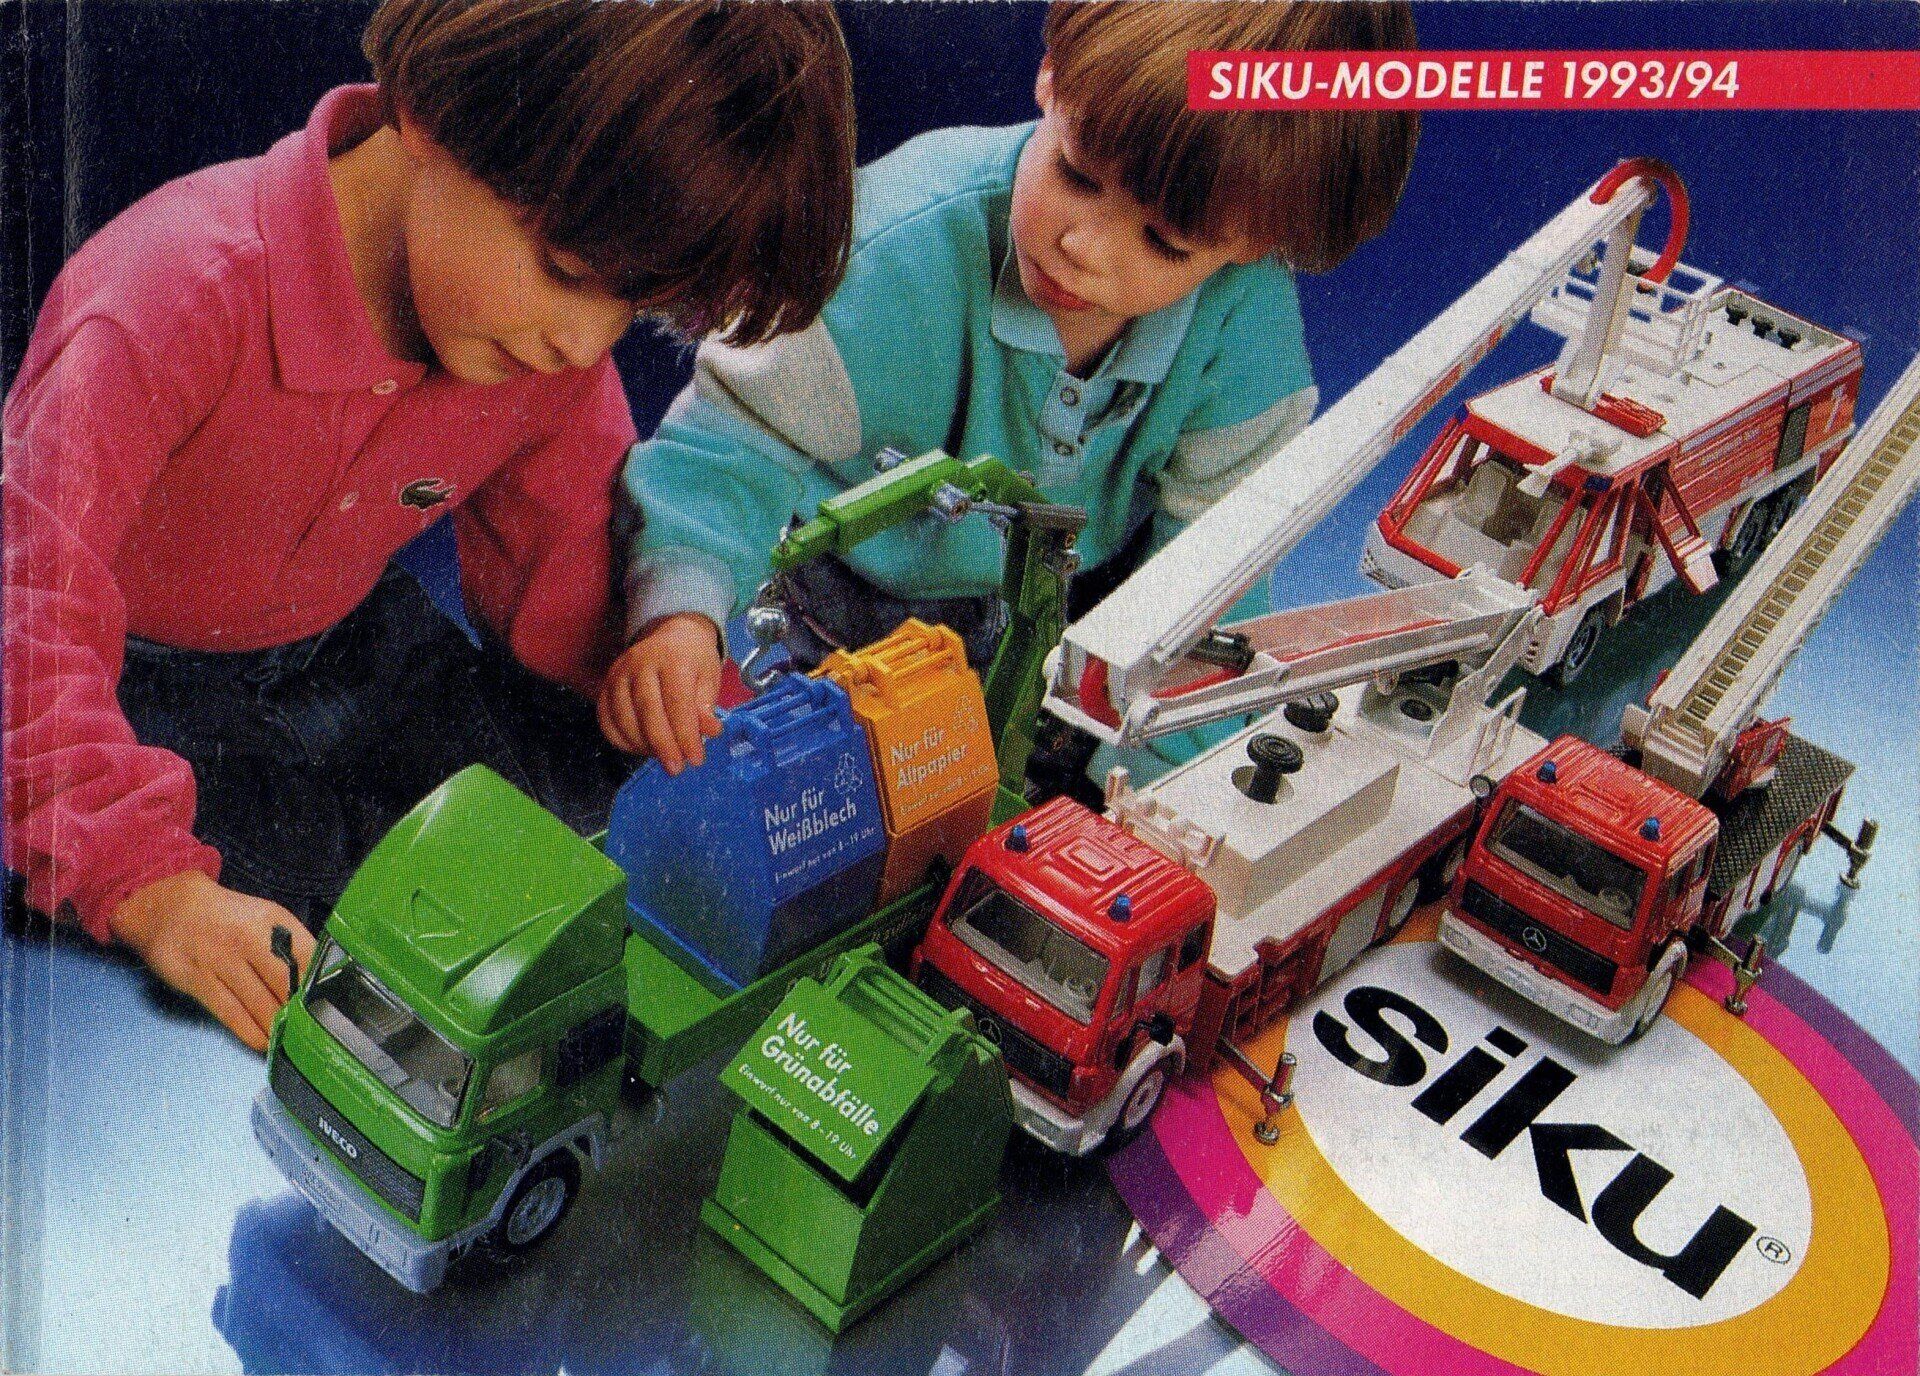 Siku catalogue 1993-94